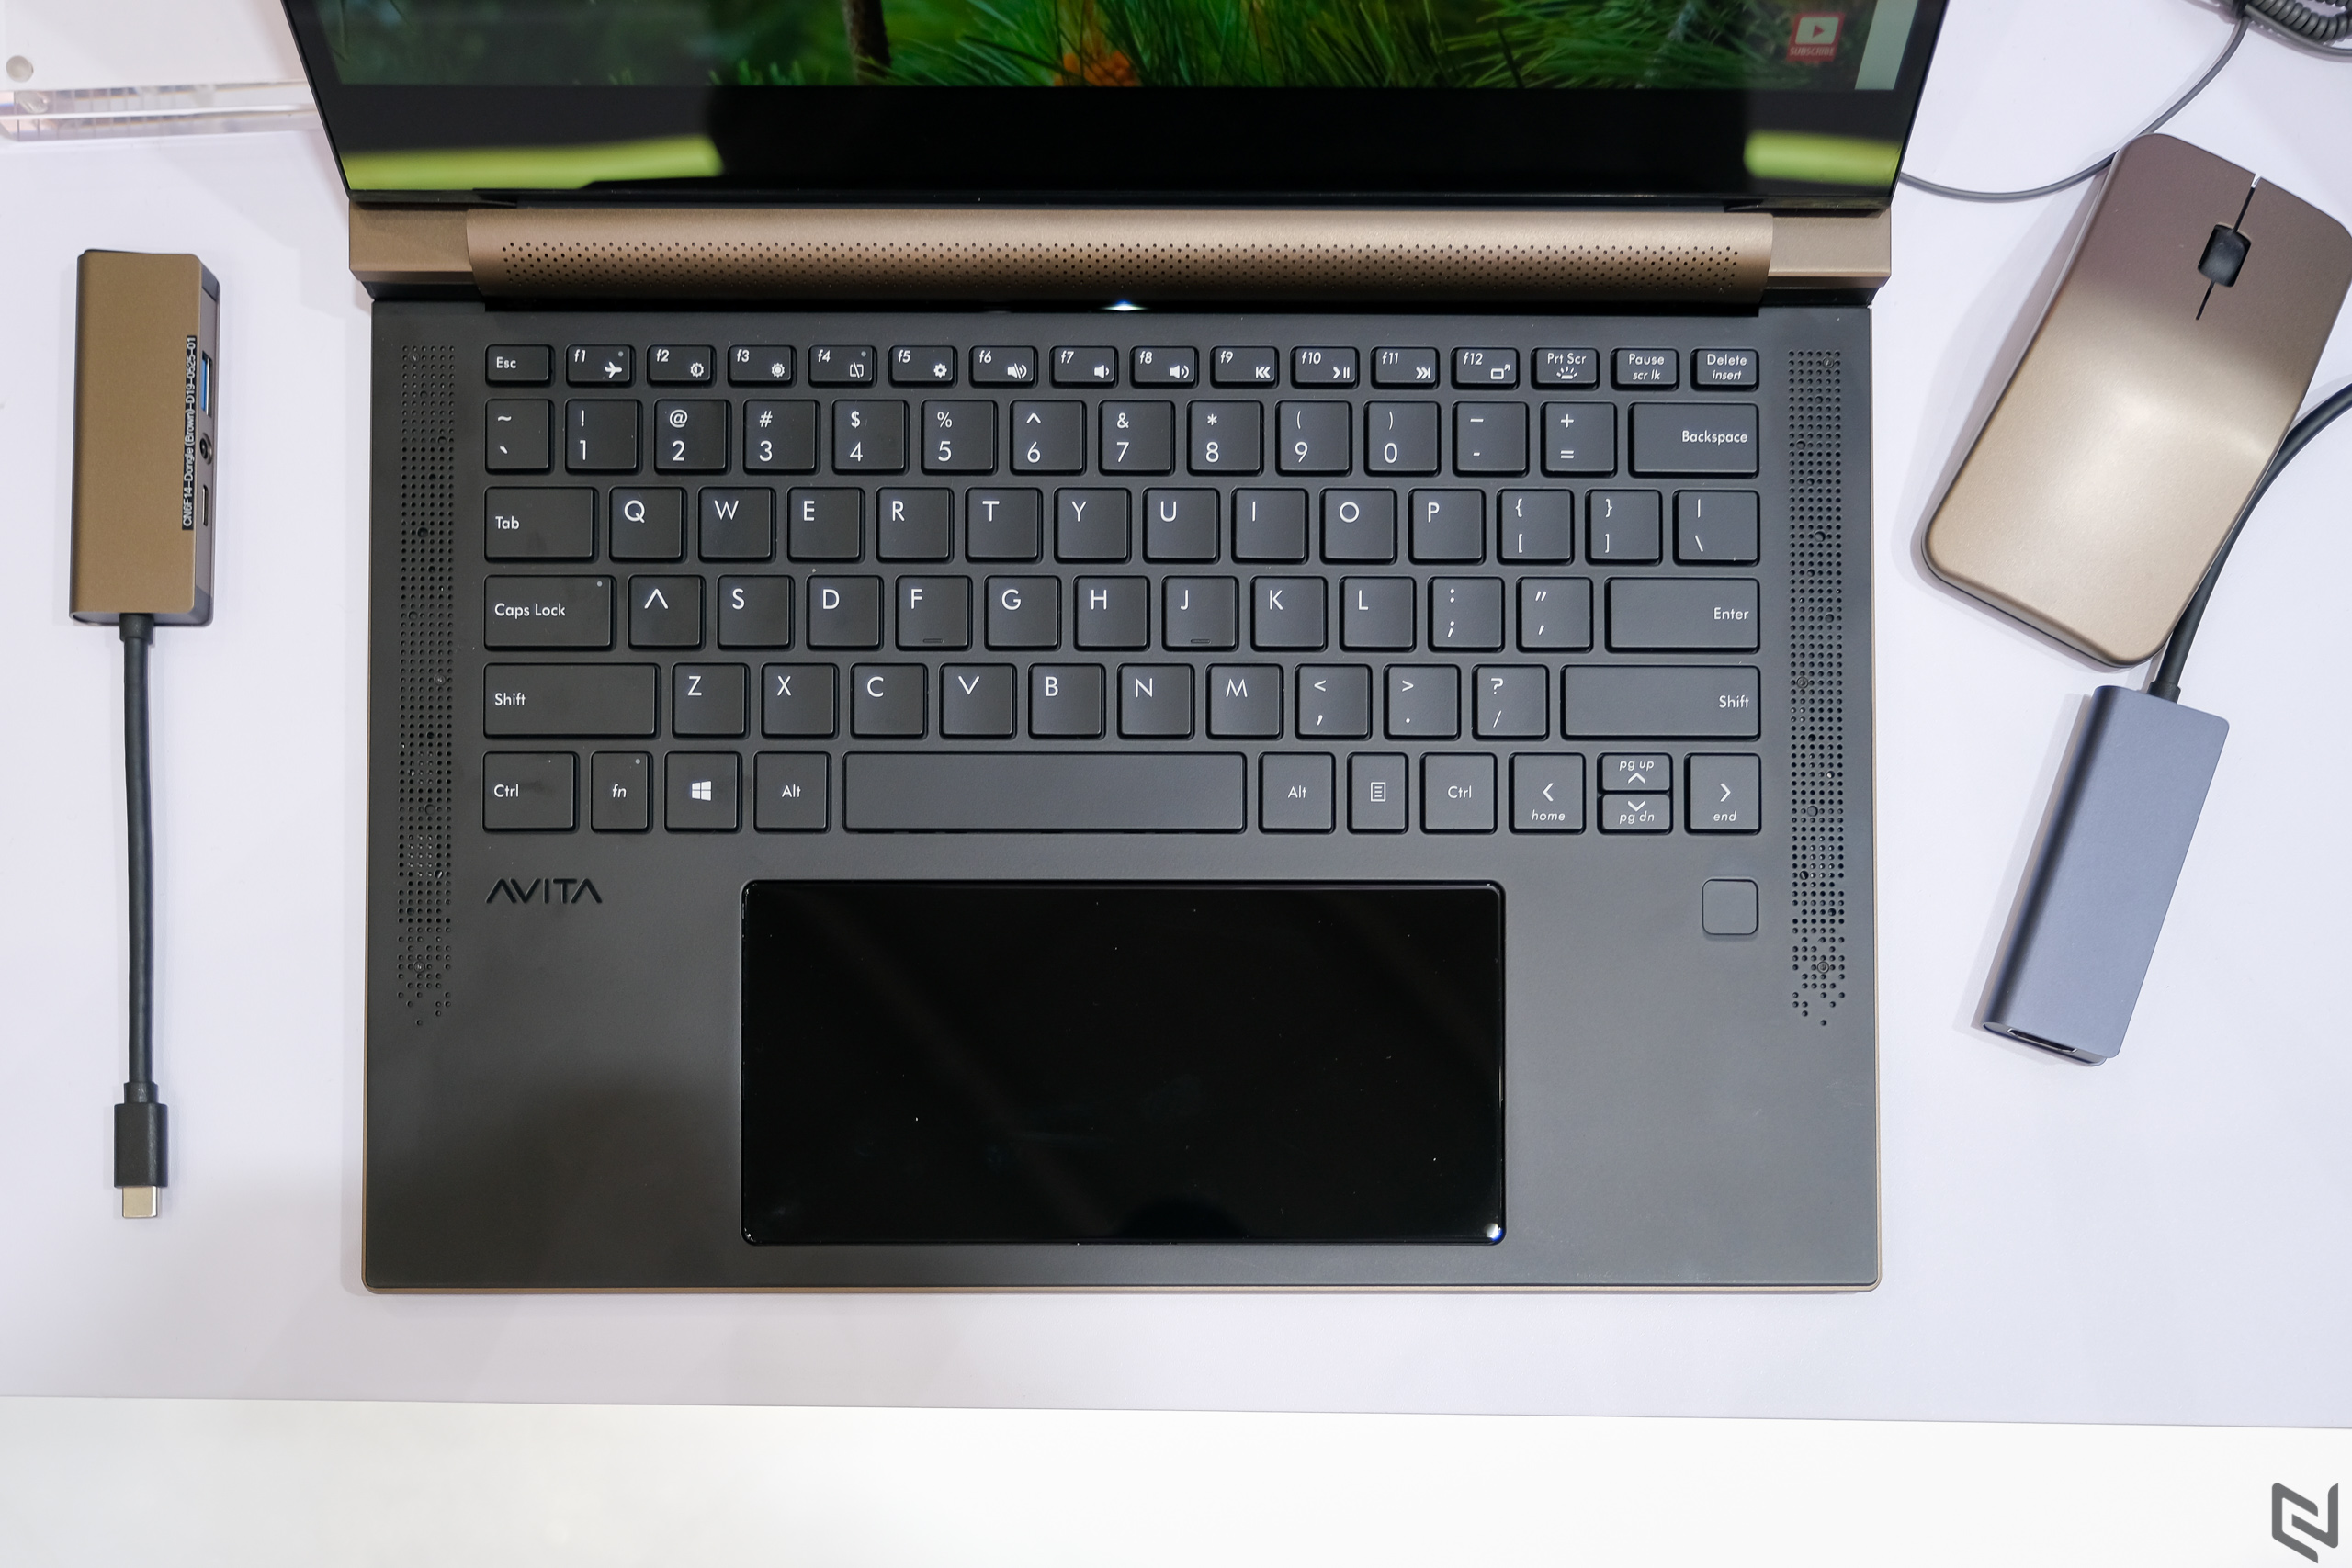 Trên tay laptop Avita Admiror tại Computex 2019, thiết kế như cuốn sổ, chỉ có 2 cổng USB-C